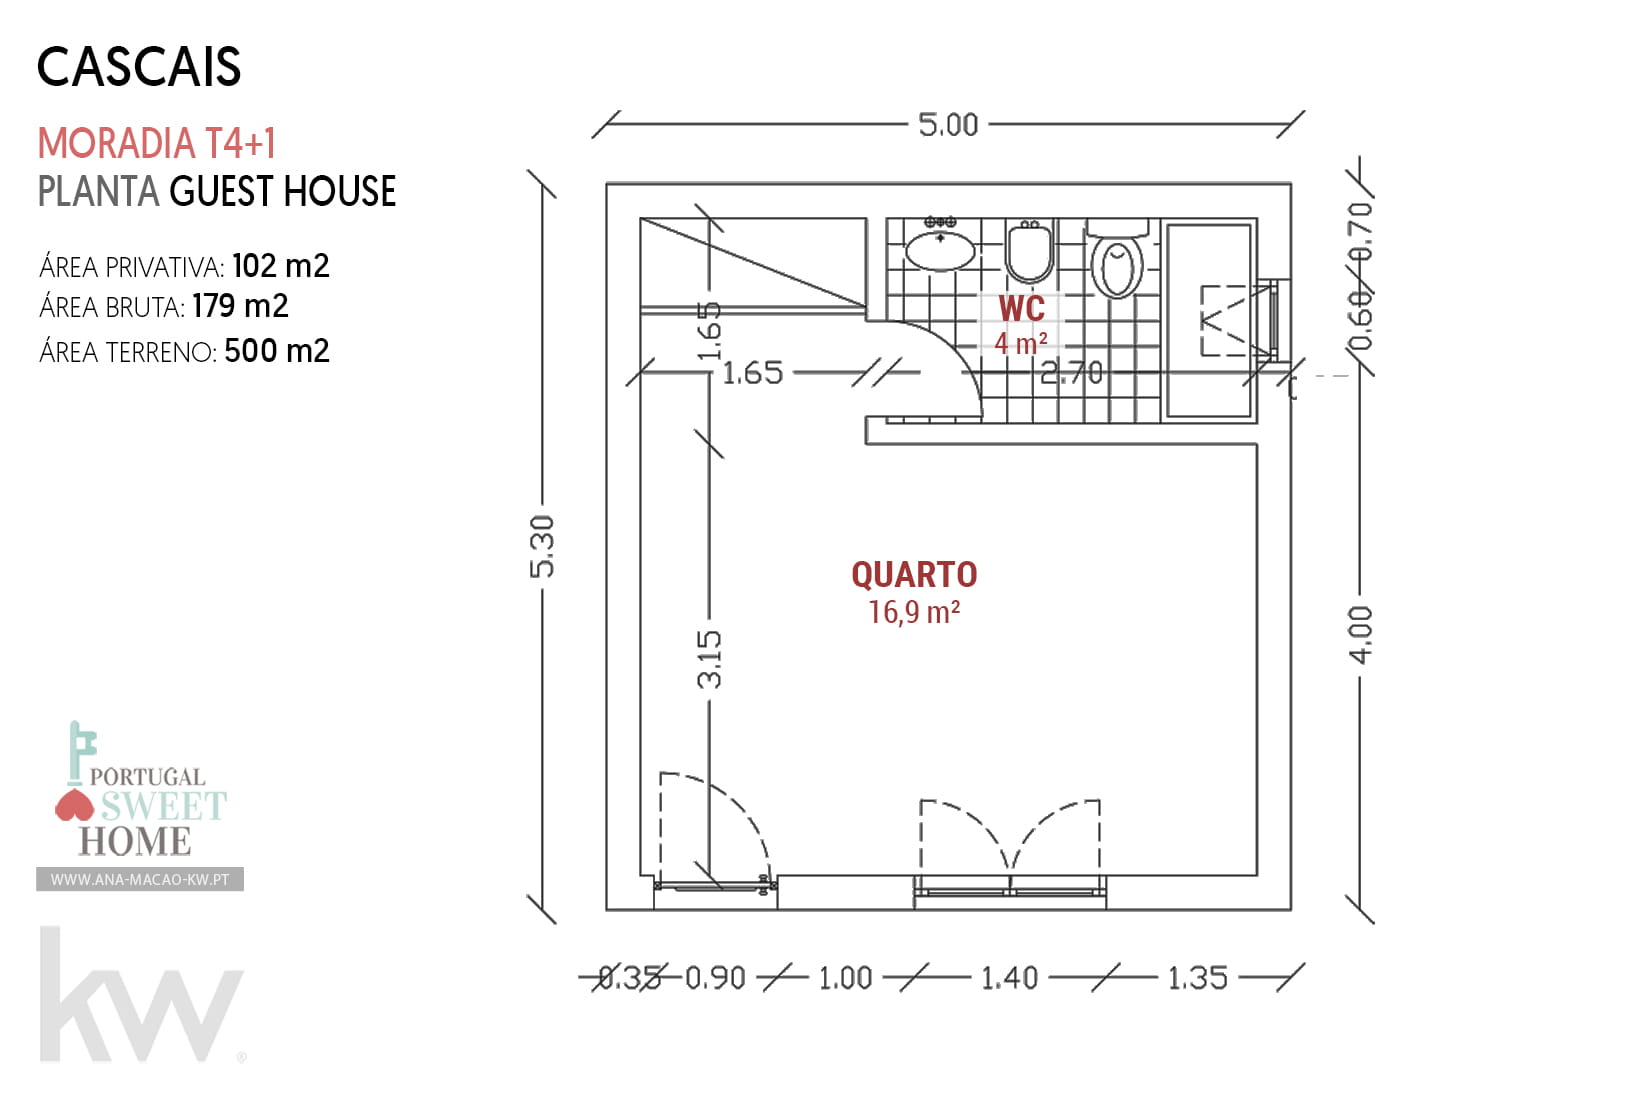 Plan d'étage de la maison d'hôtes